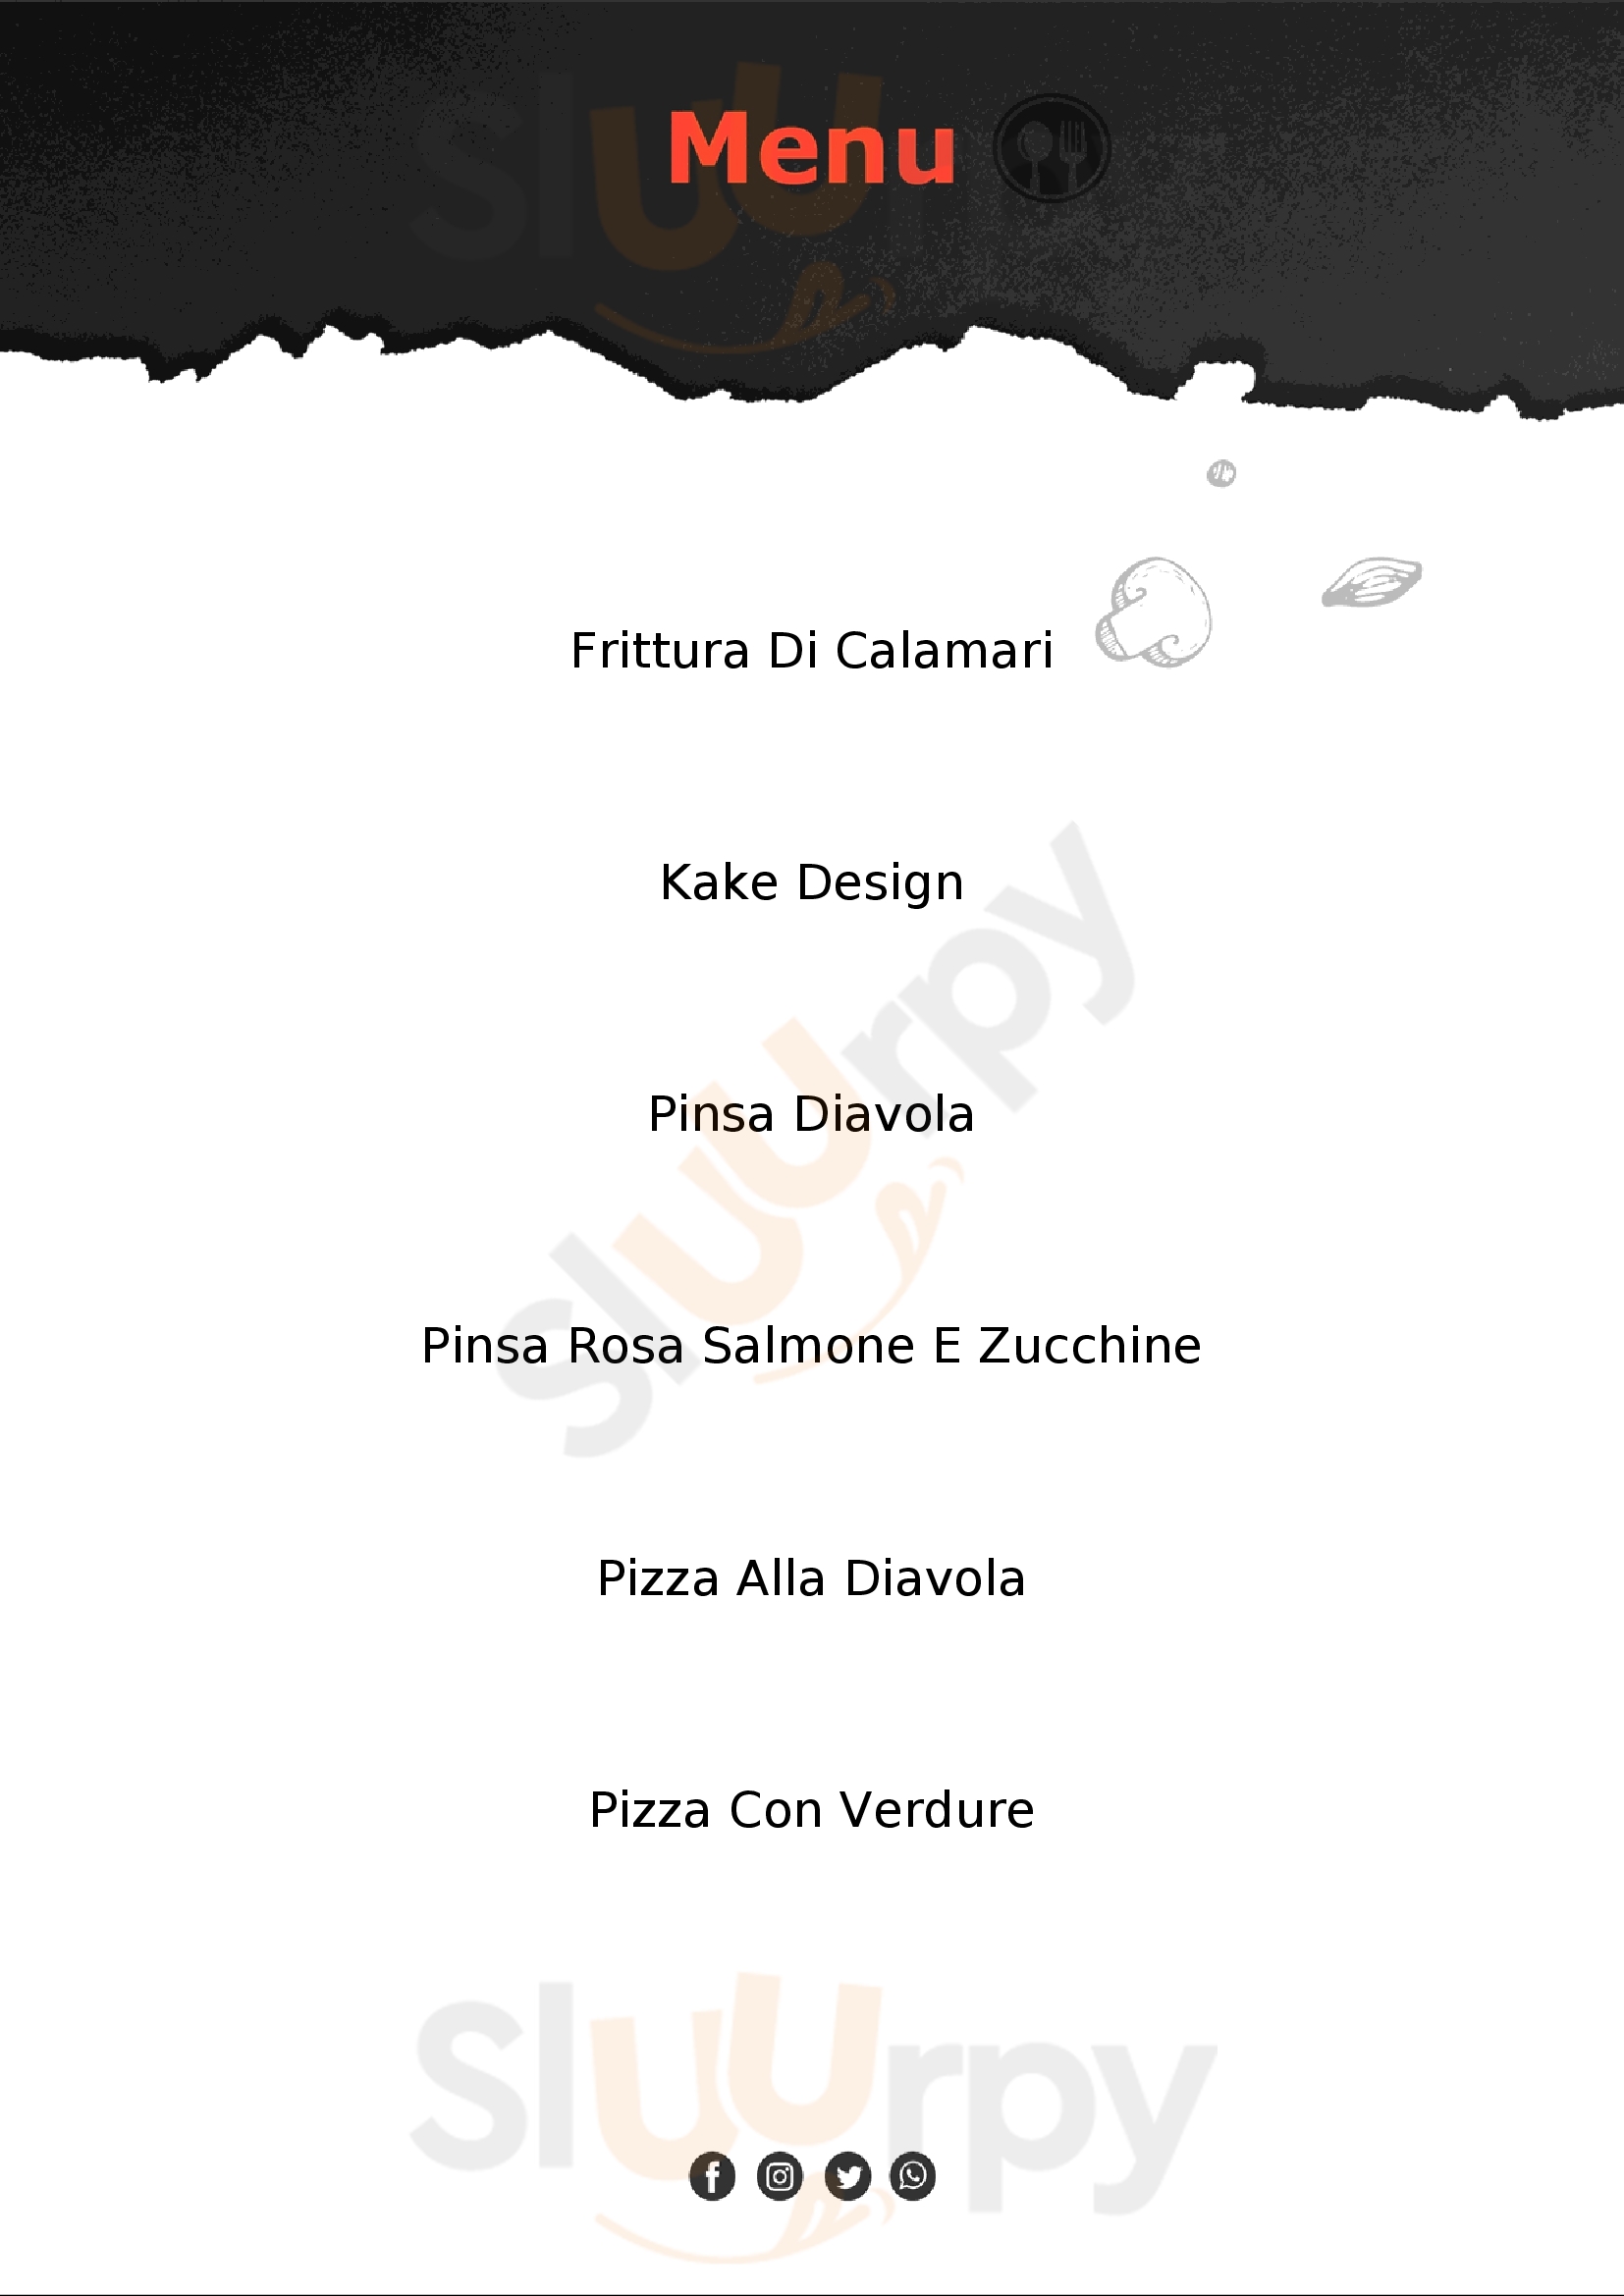 Ristorante Pizzeria da Gianni e Graziella Roma menù 1 pagina